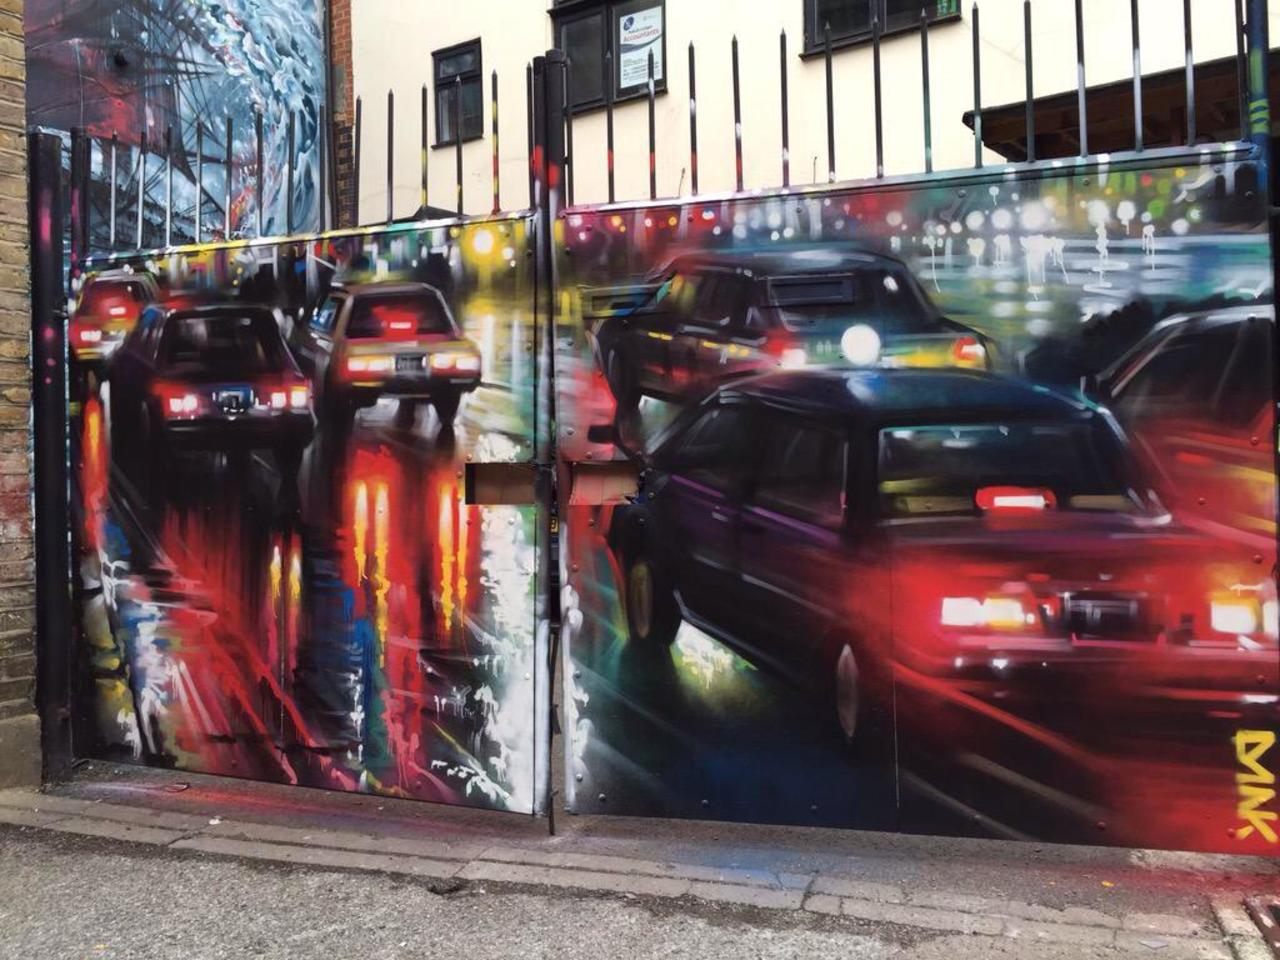 New Street Art by DanKitchener in Brick Lane London 

#art #graffiti #mural #streetart http://t.co/t7ijElDvFx